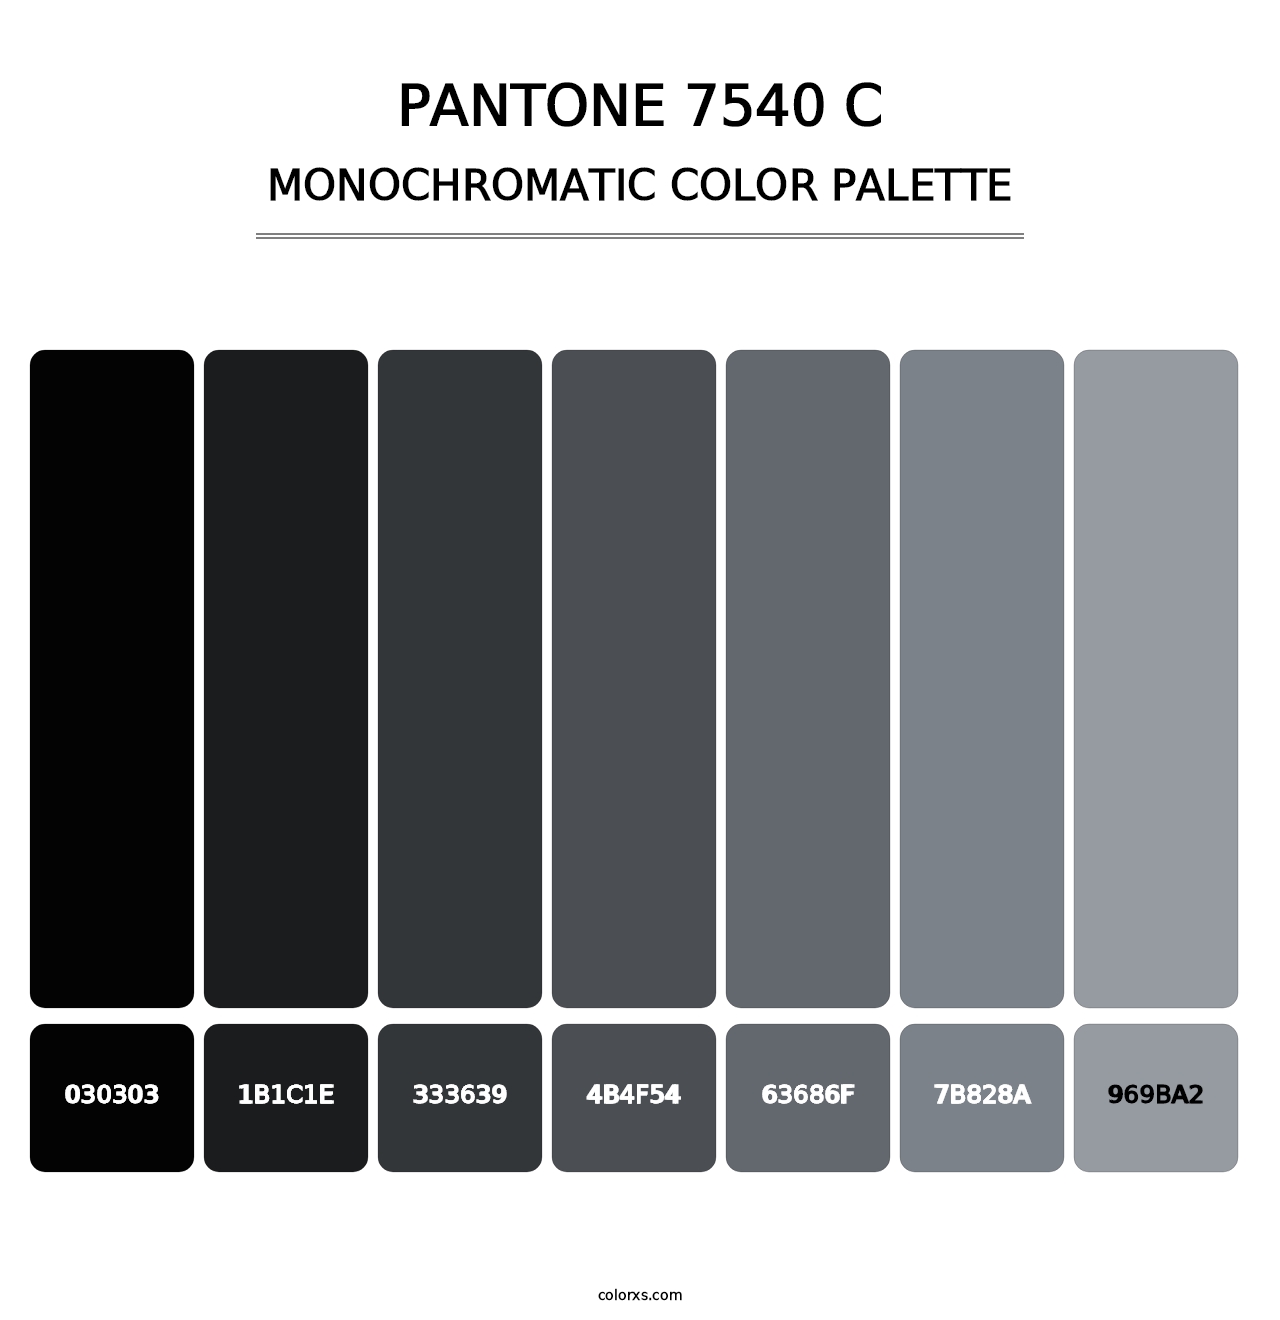 PANTONE 7540 C - Monochromatic Color Palette